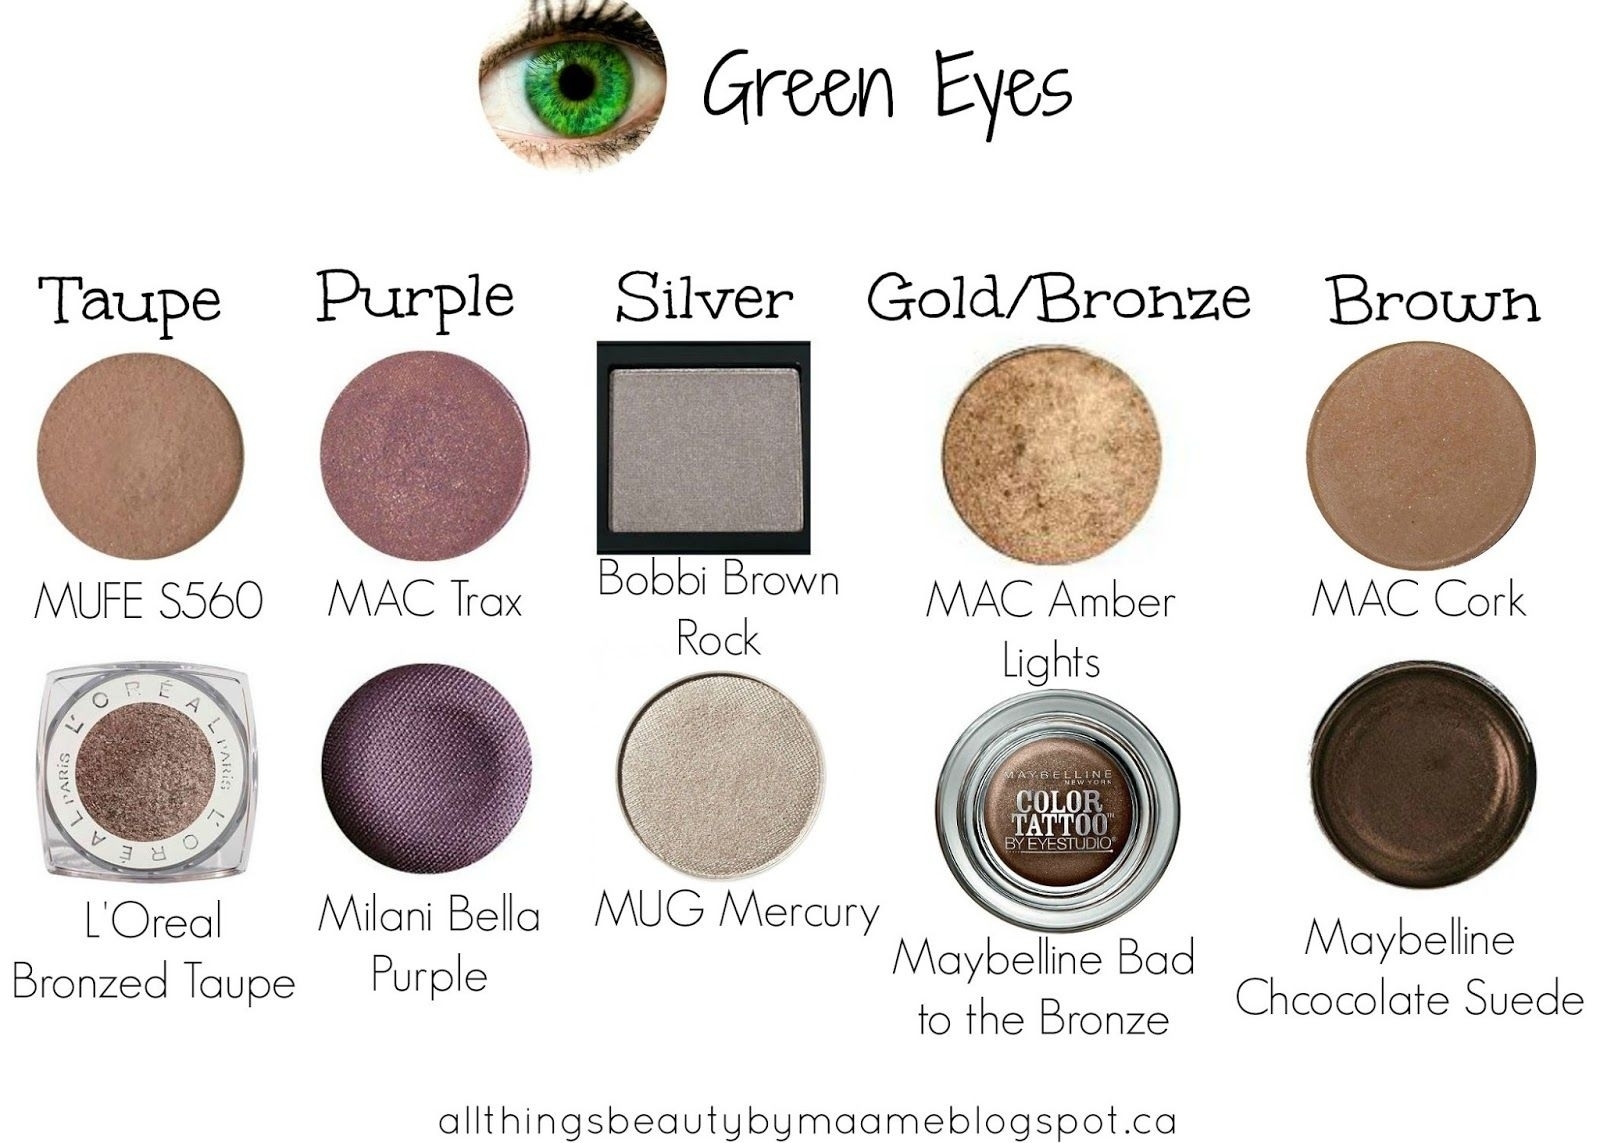 Best Mac Eyeshadow Colors For Green Eyes – Wavy Haircut inside Best Mac Brown Eyeshadow For Green Eyes